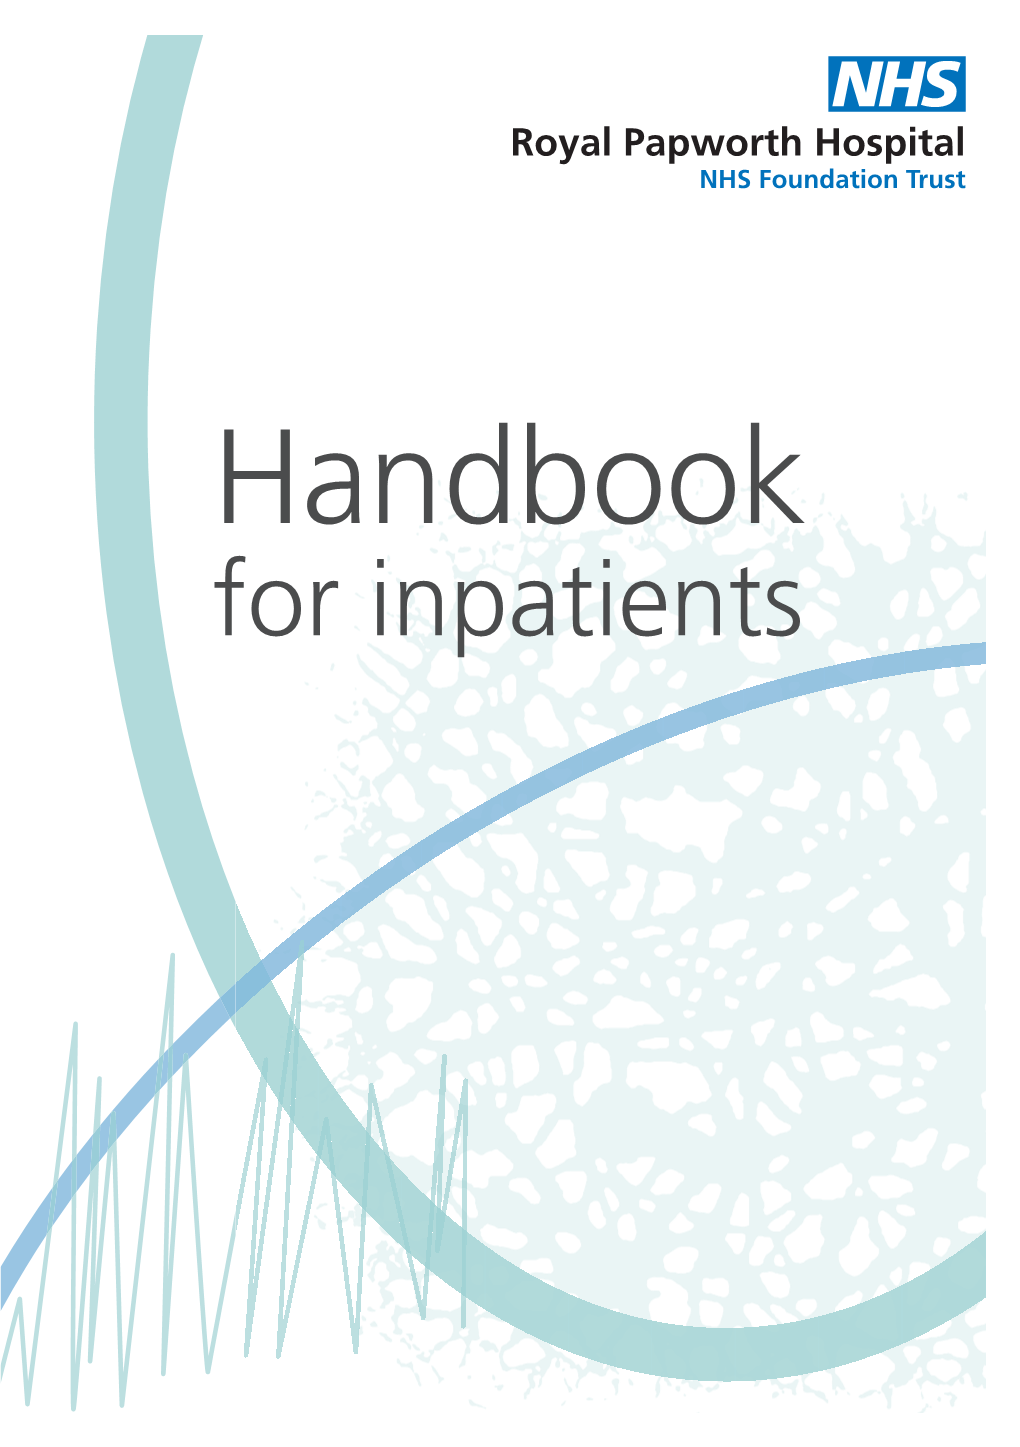 Handbook for Inpatients Welcome